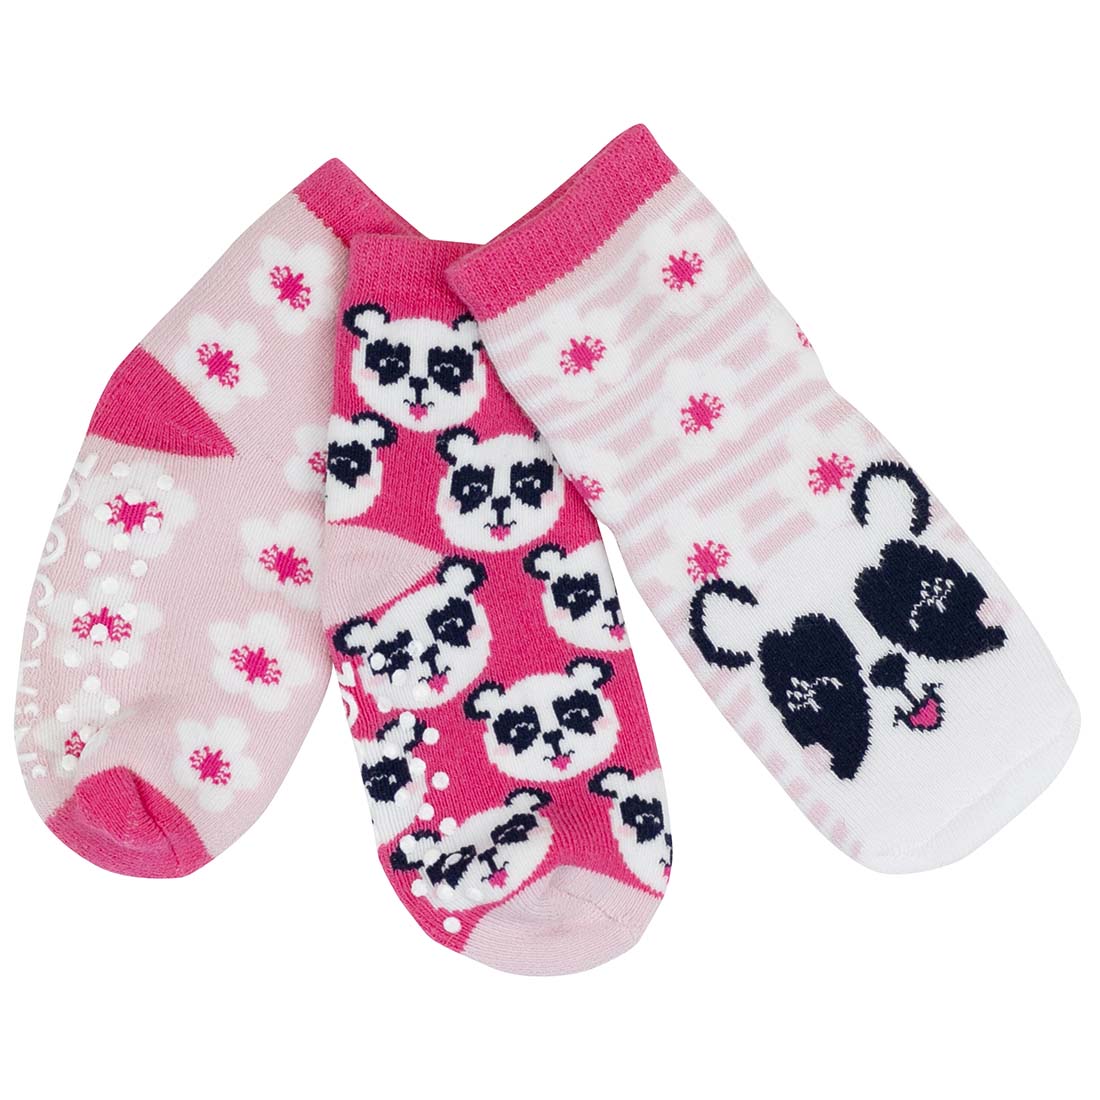 Baby/Toddler Terry Socks Set (3-pk) - Pippa the Panda